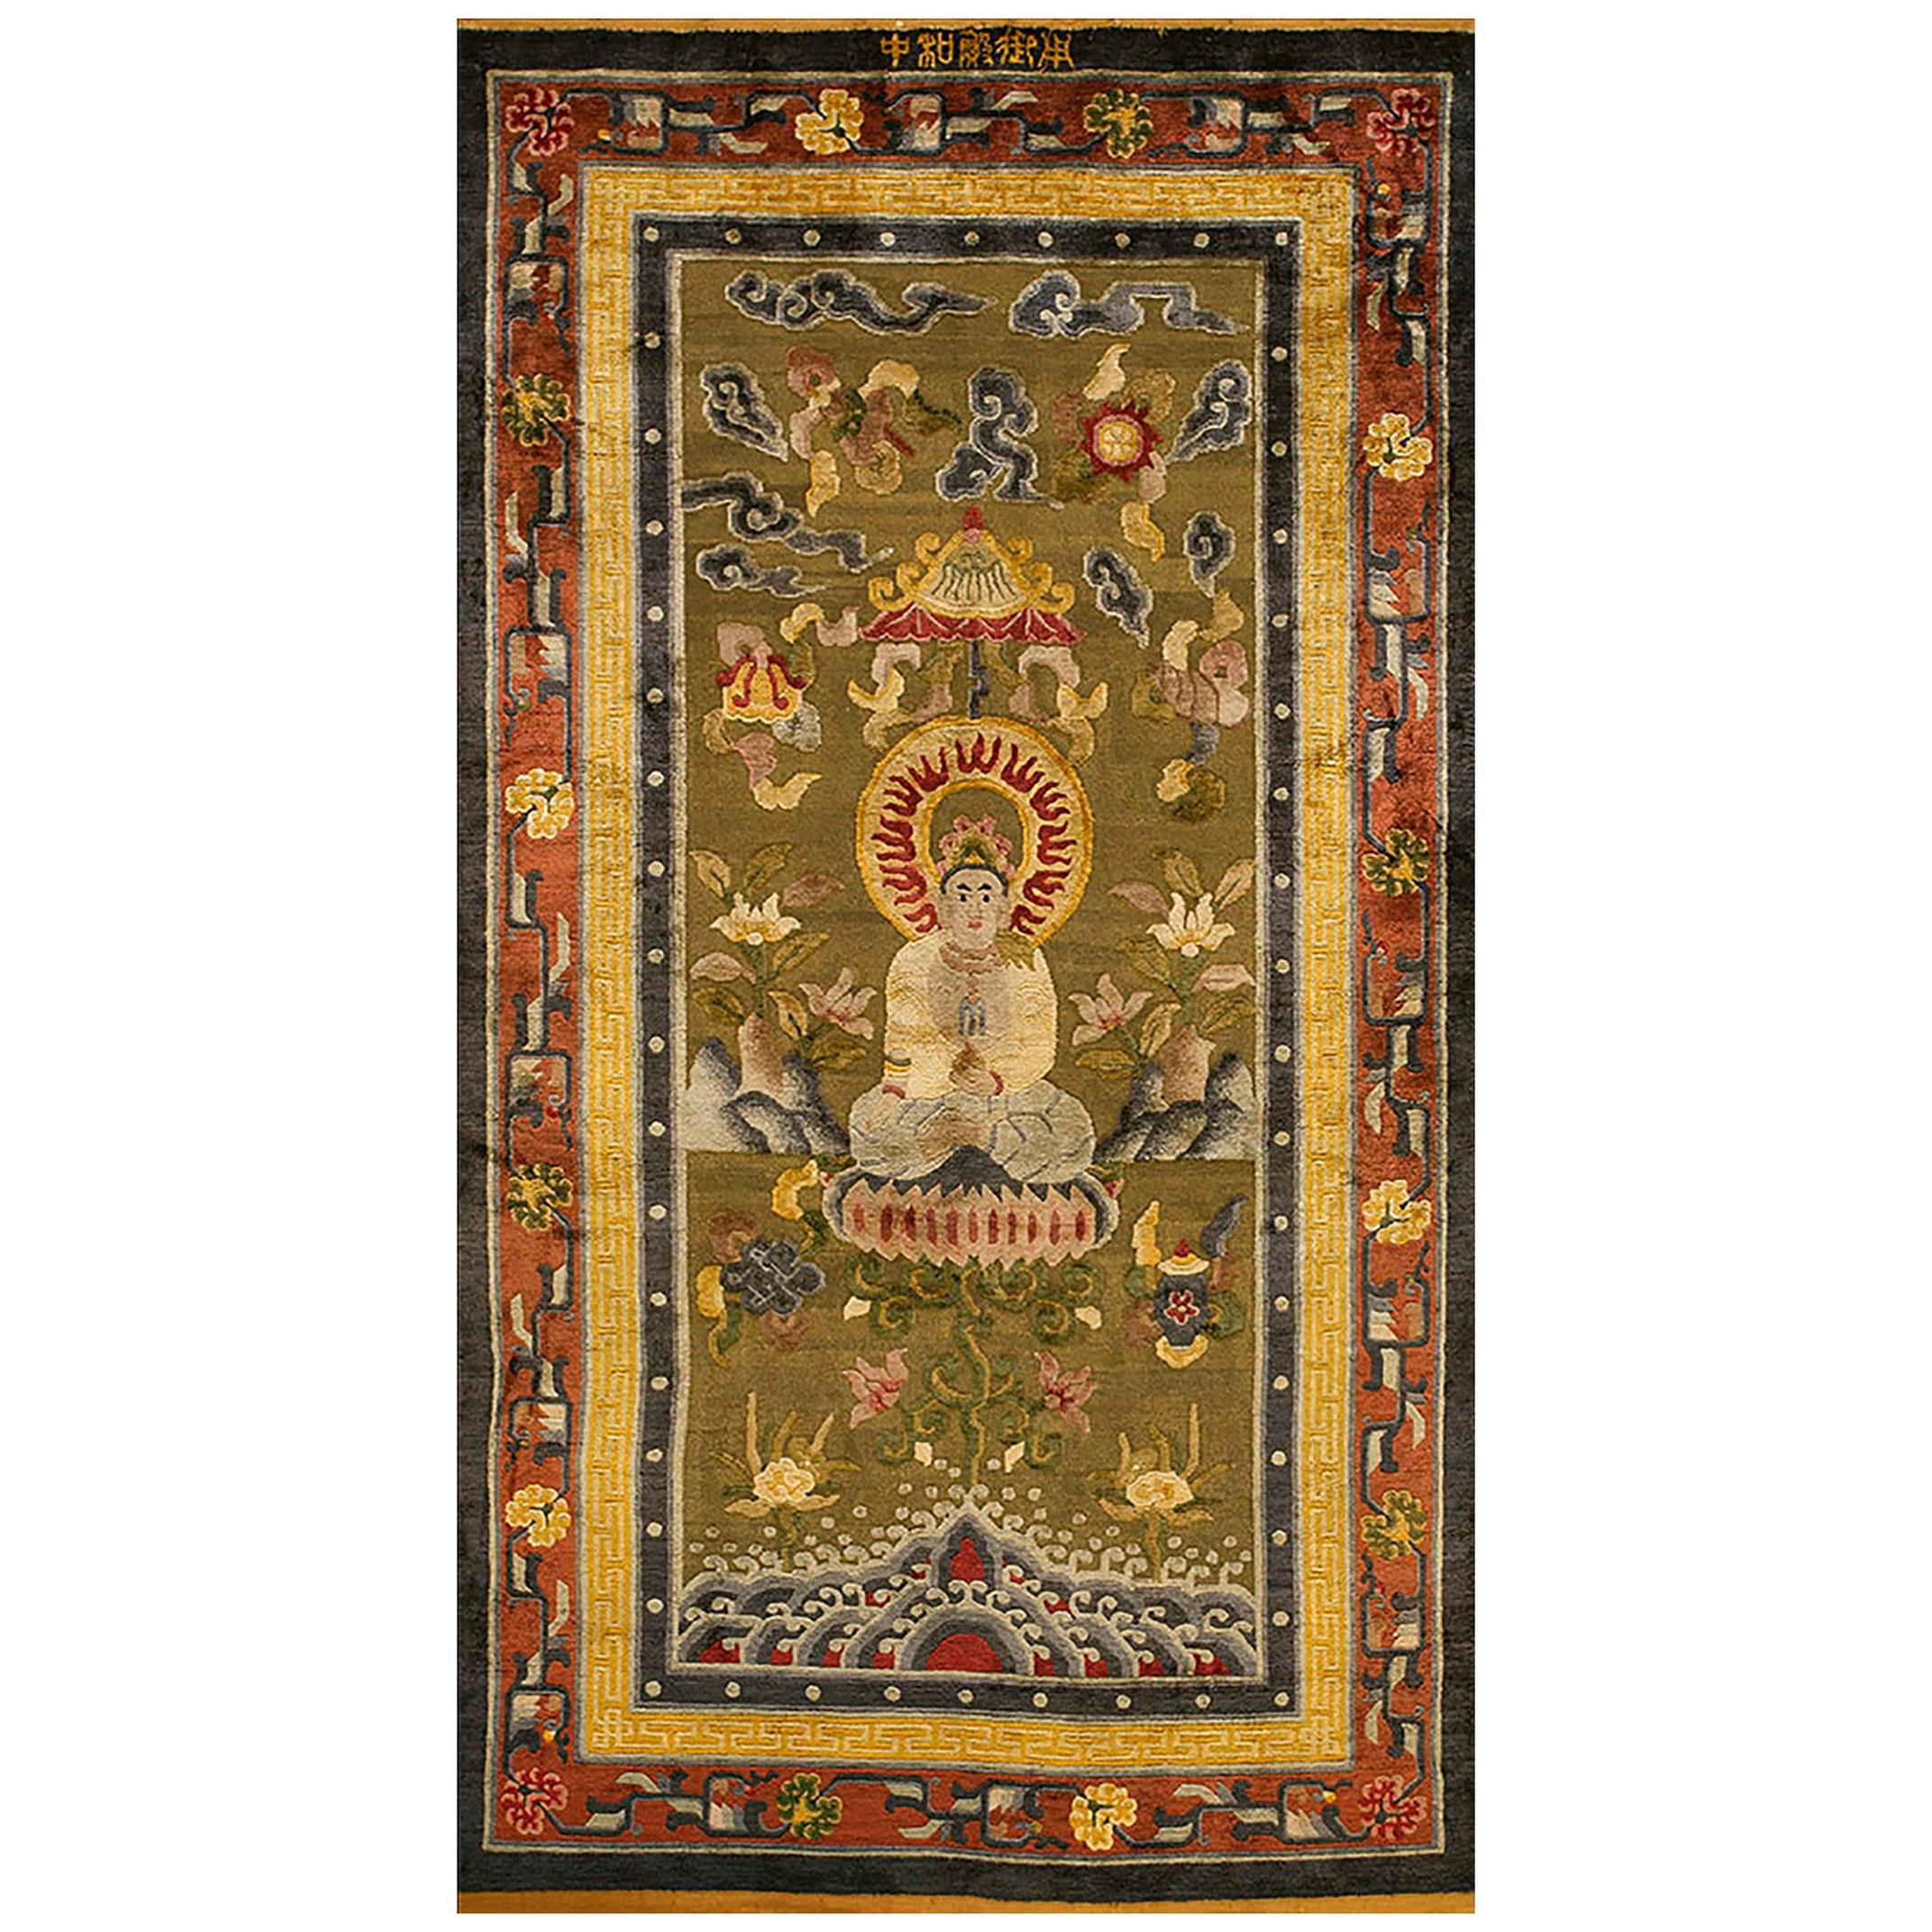 Chinesischer Meditationsteppich aus Seide und Metallic-Fäden aus dem 19. Jahrhundert (4''x7''-122x213)